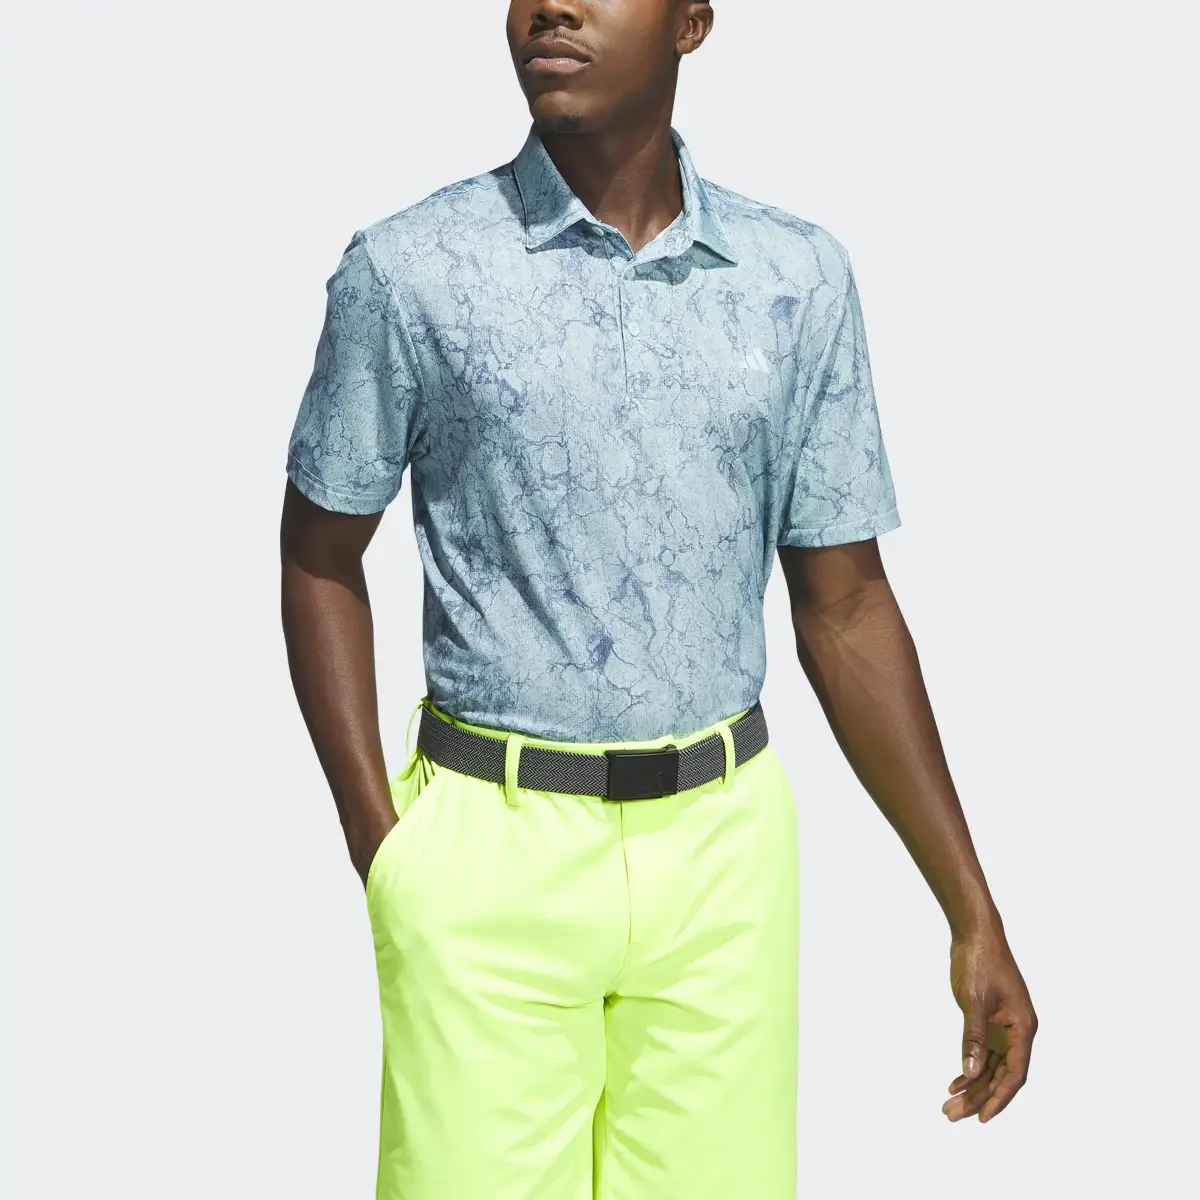 Adidas Ultimate365 Print Golf Polo Shirt. 1